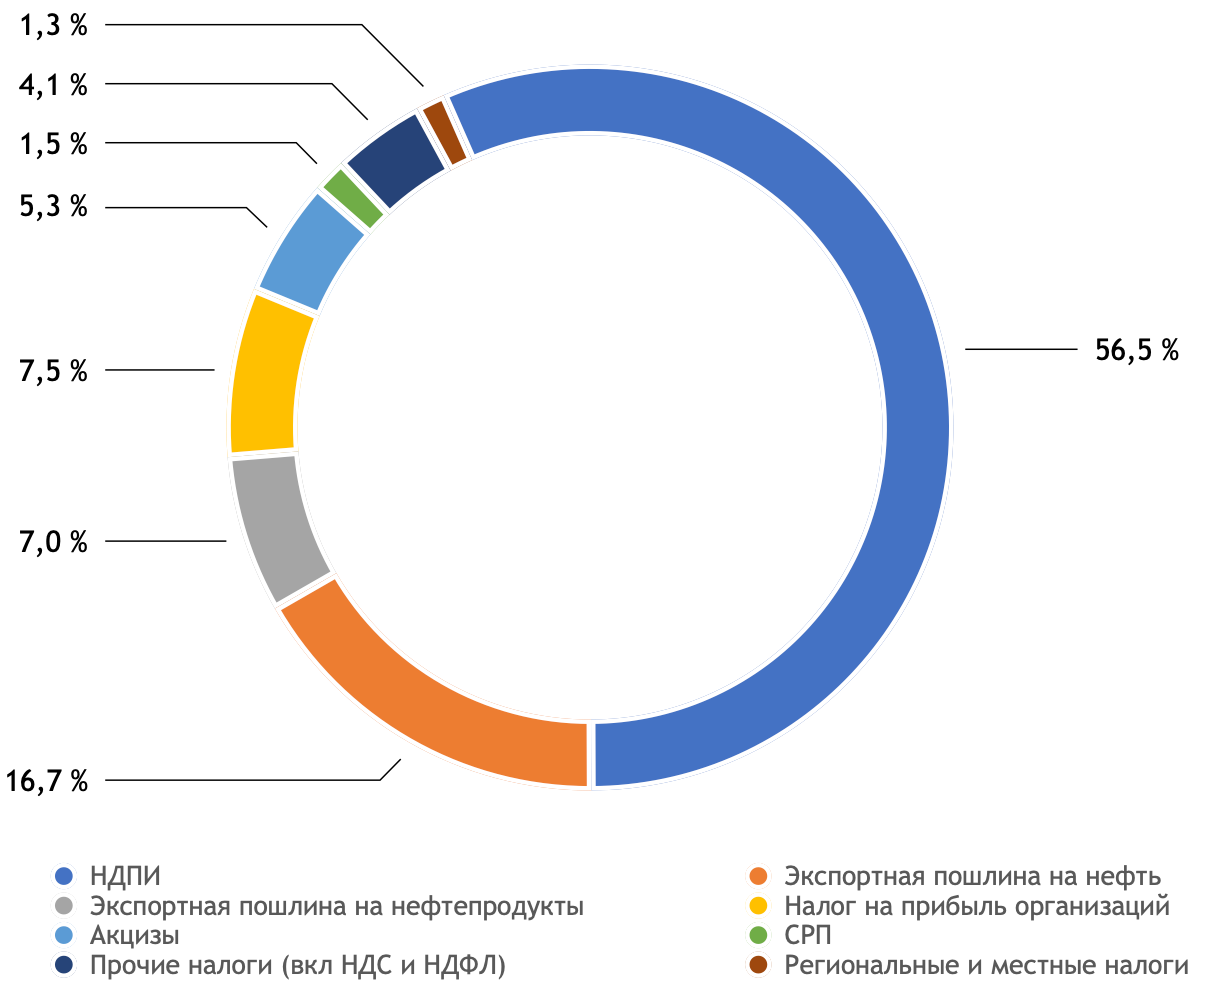 Структура доходов бюджета России от нефтяной отрасли в 2018 г.
Источник: расчет автора по данным ФНС, Росказны и Минфина